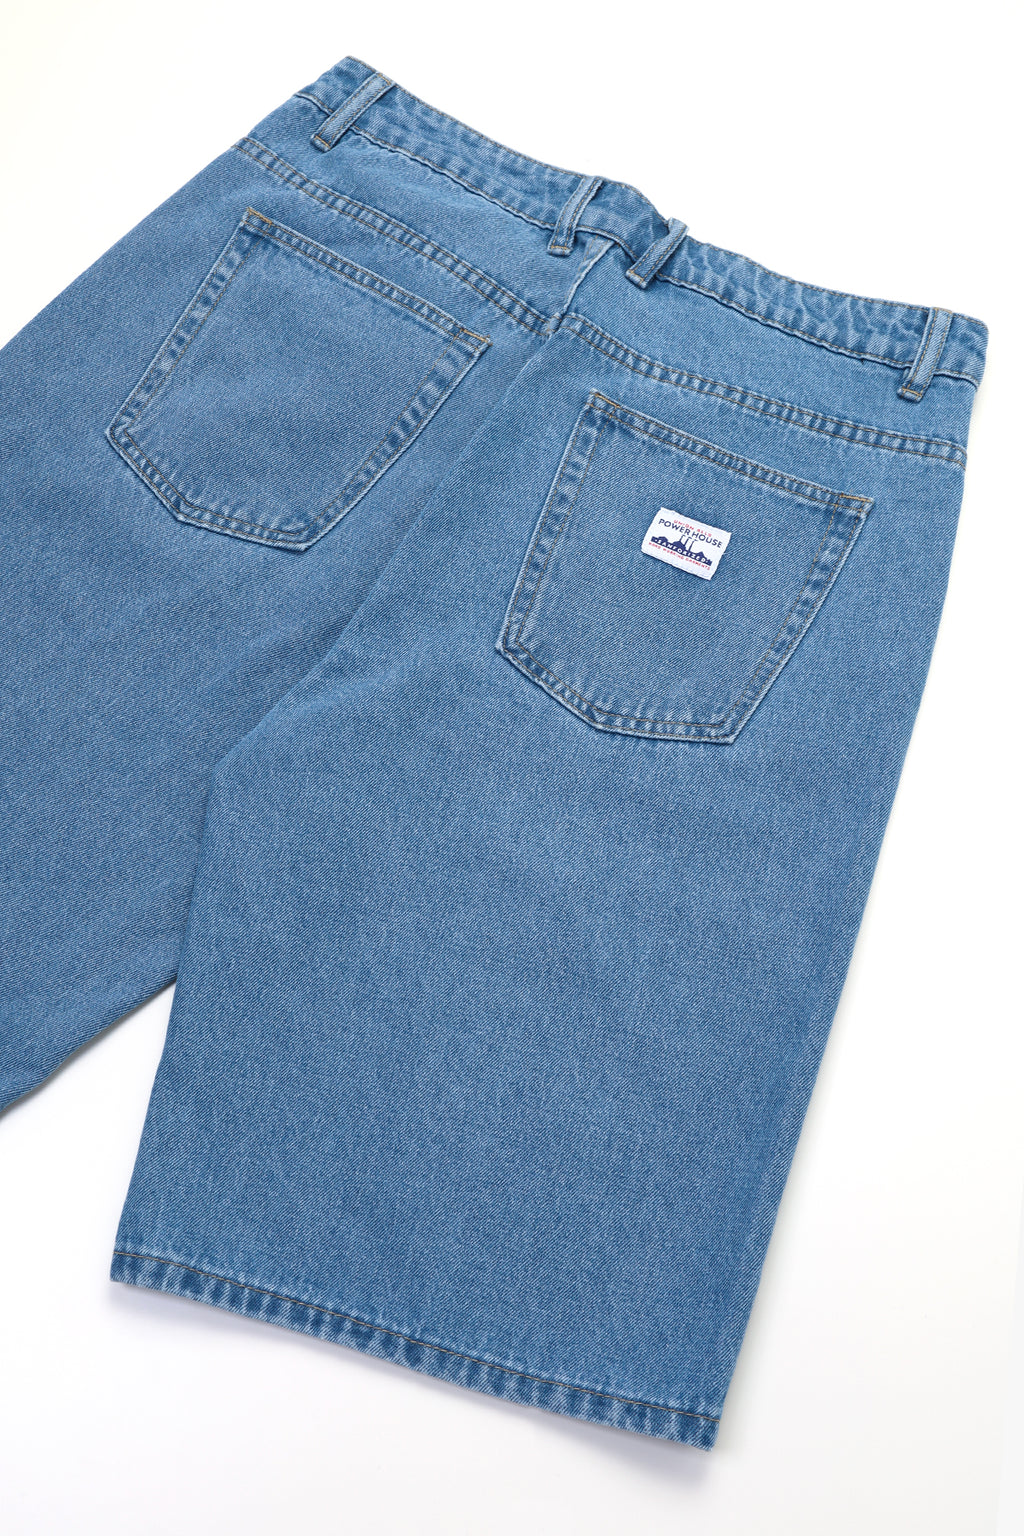 Power House - 90's Denim Shorts - Washed Blue